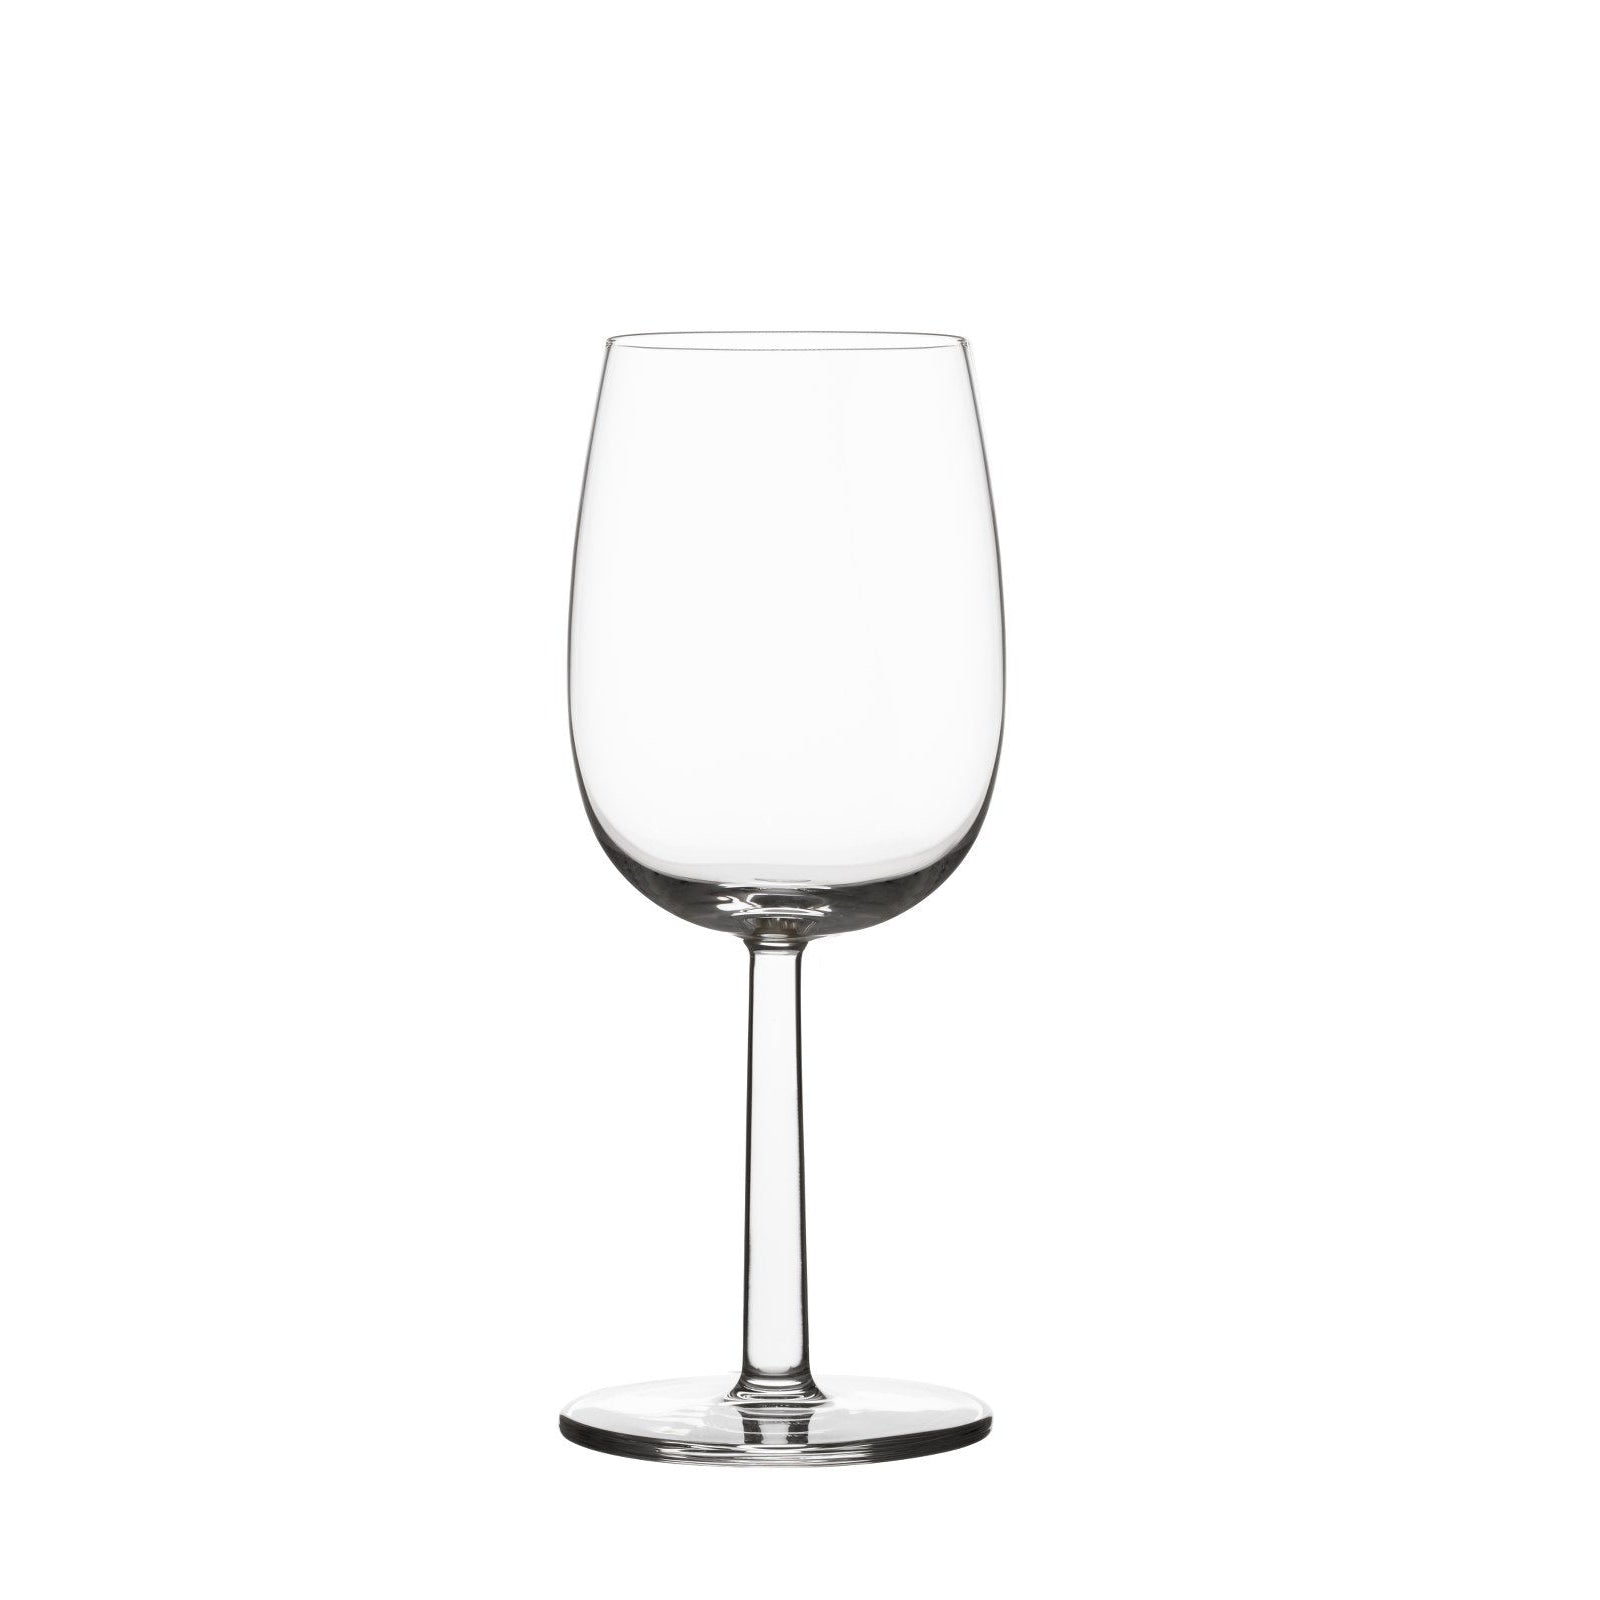 Iittala raami bicchieri di vino bianco sereno 2 pezzi, 28cl